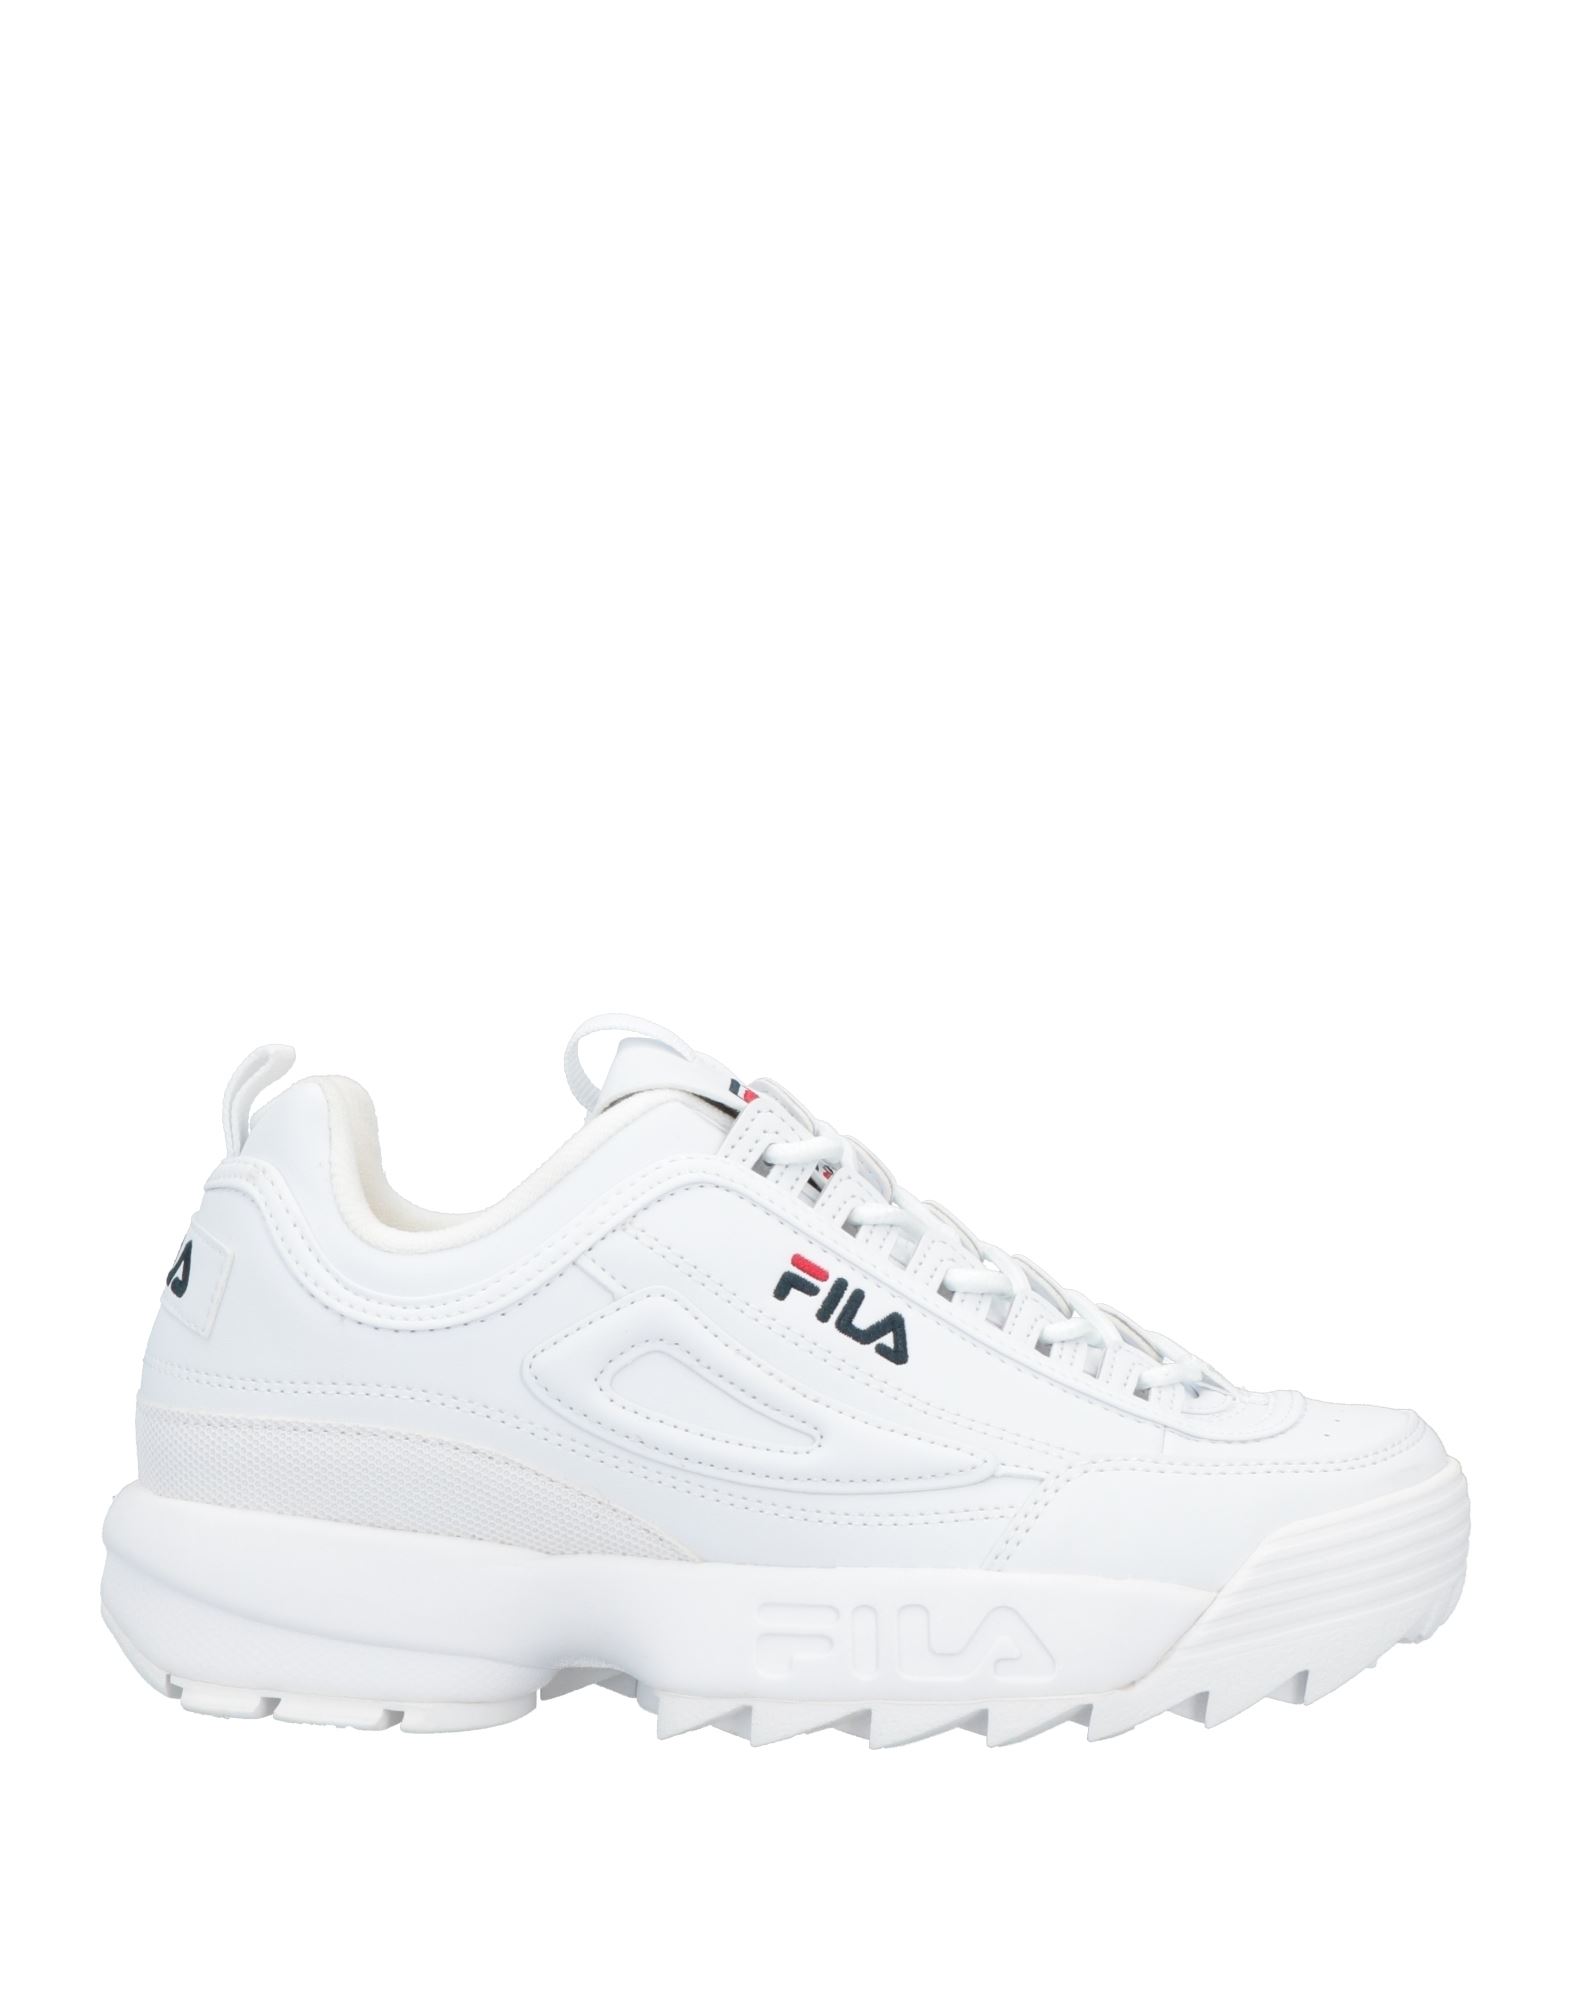 Shop Fila Man Sneakers White Size 9 Textile Fibers